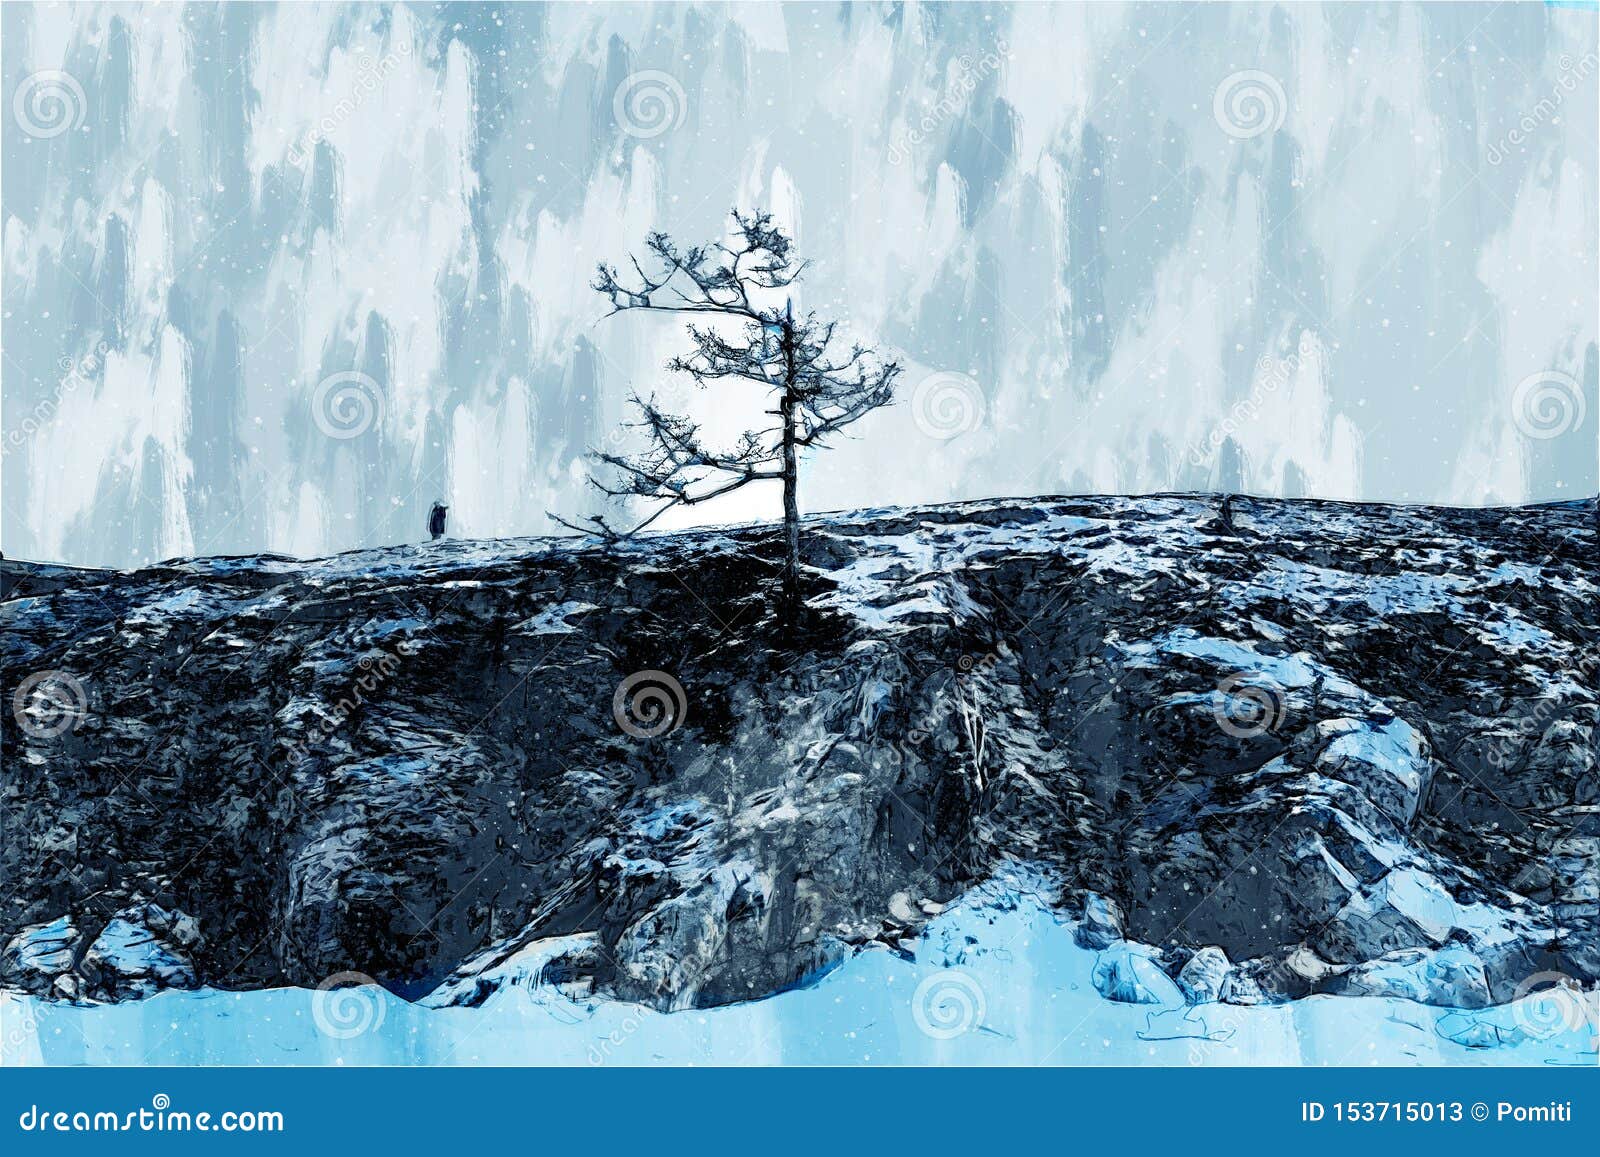 壁纸 海岸岩石悬崖上的树 2560x1600 HD 高清壁纸, 图片, 照片